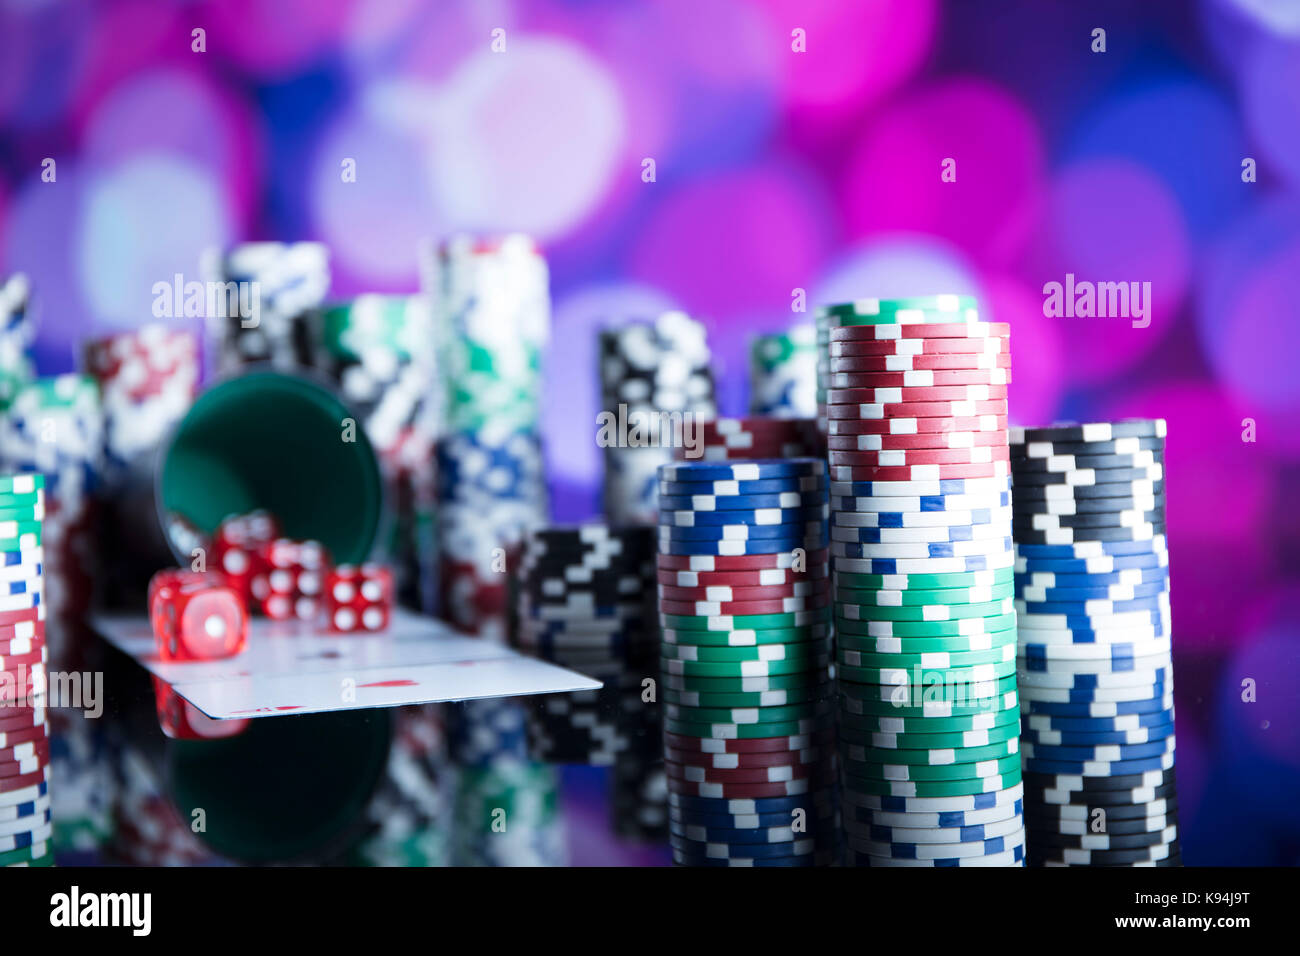 Casino Thema. Kontrastreiches Bild von casino Roulette, Poker Spiel, Würfelspiel, poker chips auf einem Spieltisch, alle auf bunten bokeh Hintergrund. Stockfoto